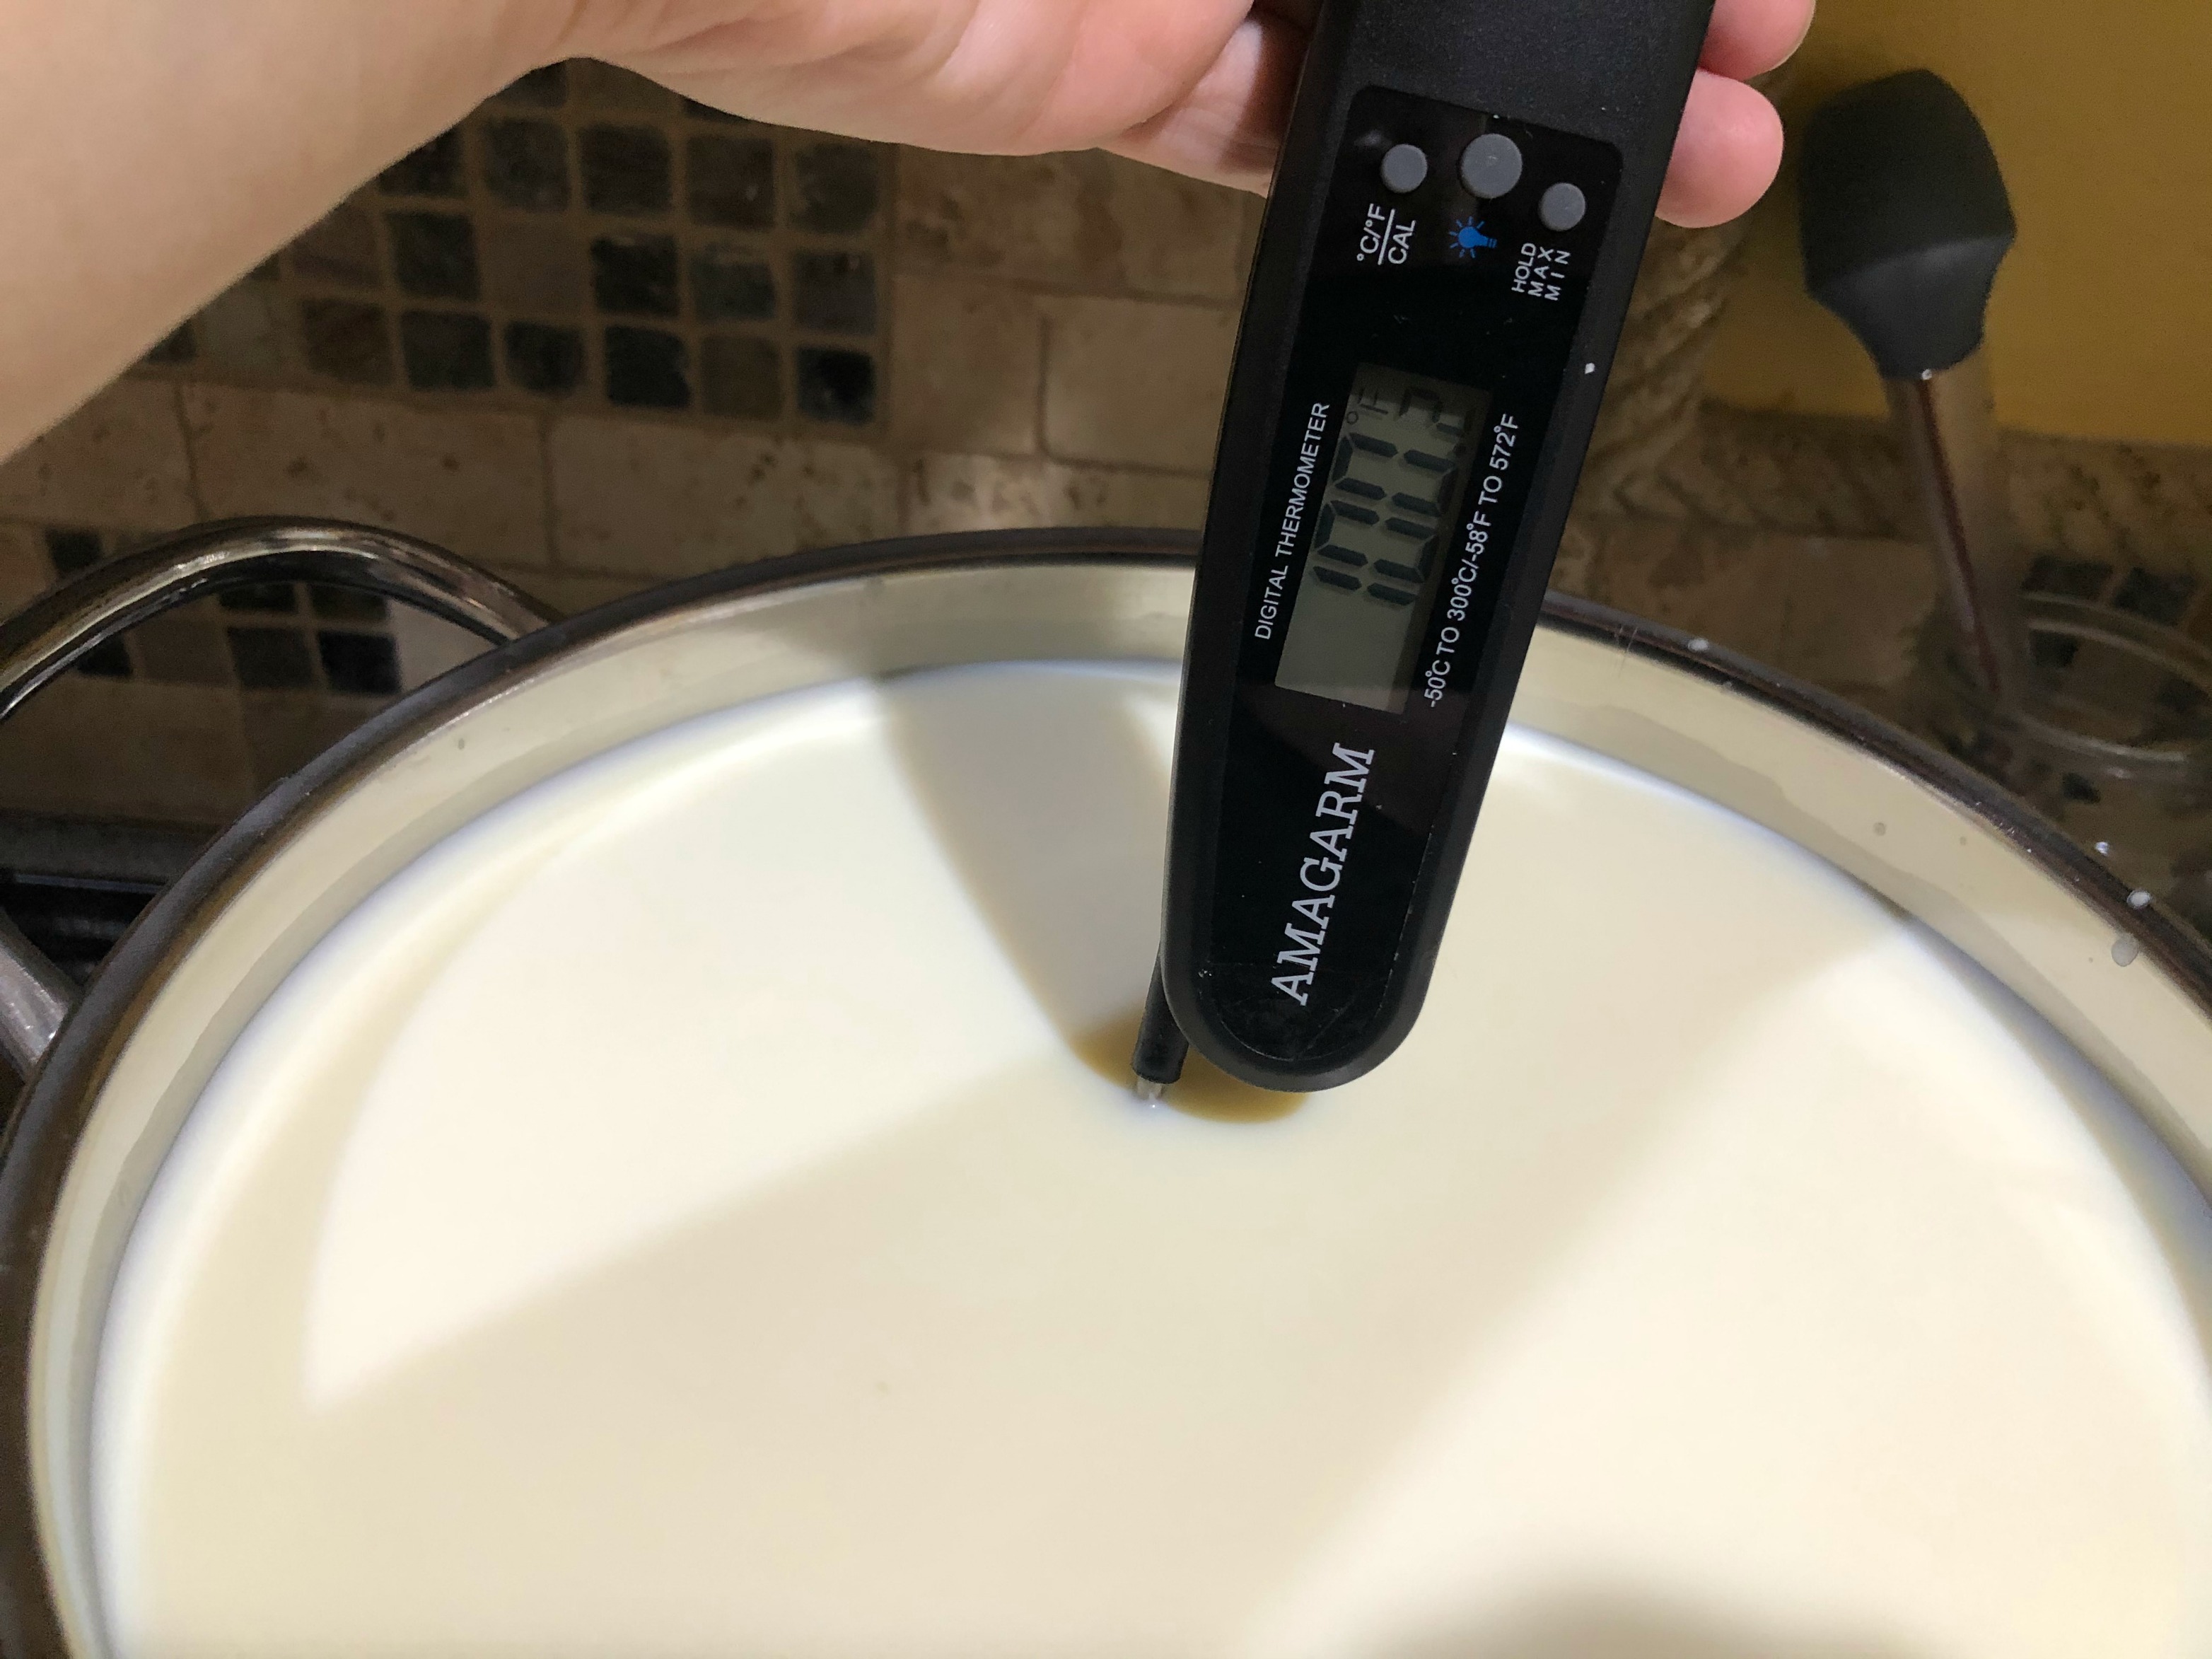 Heating the milk to make cotija cheese